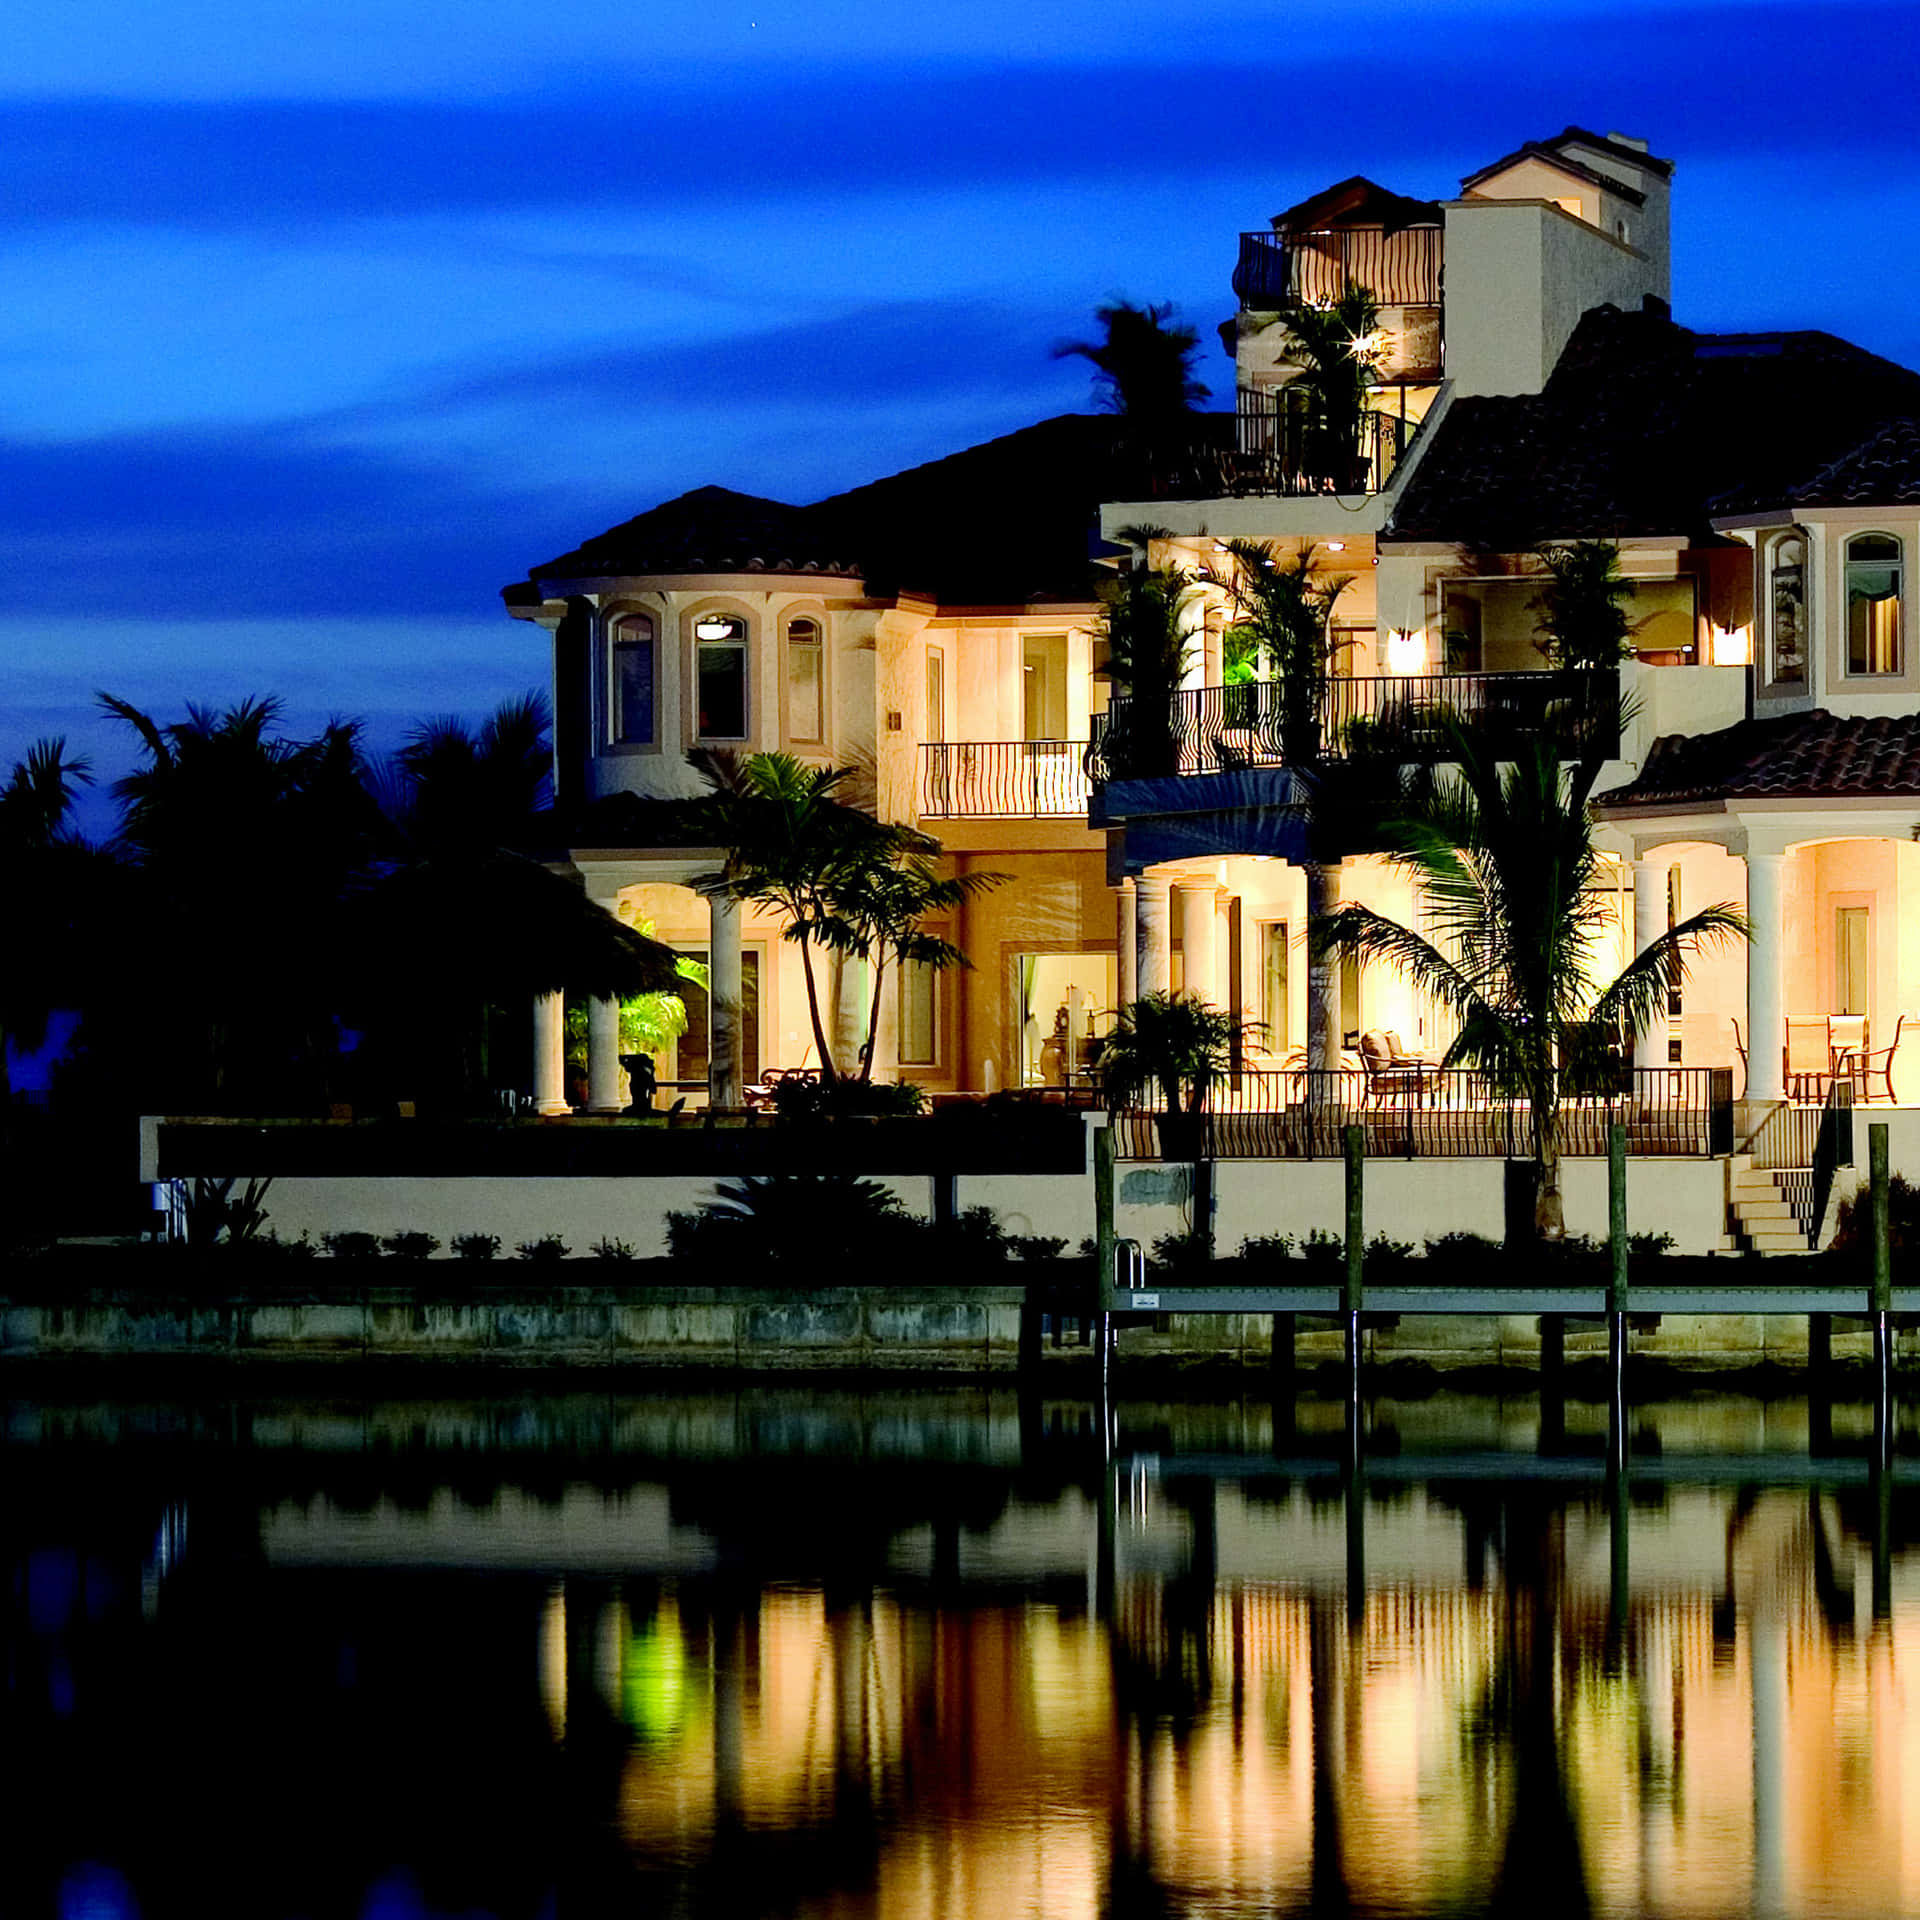 Lake Luxury House At Night Wallpaper